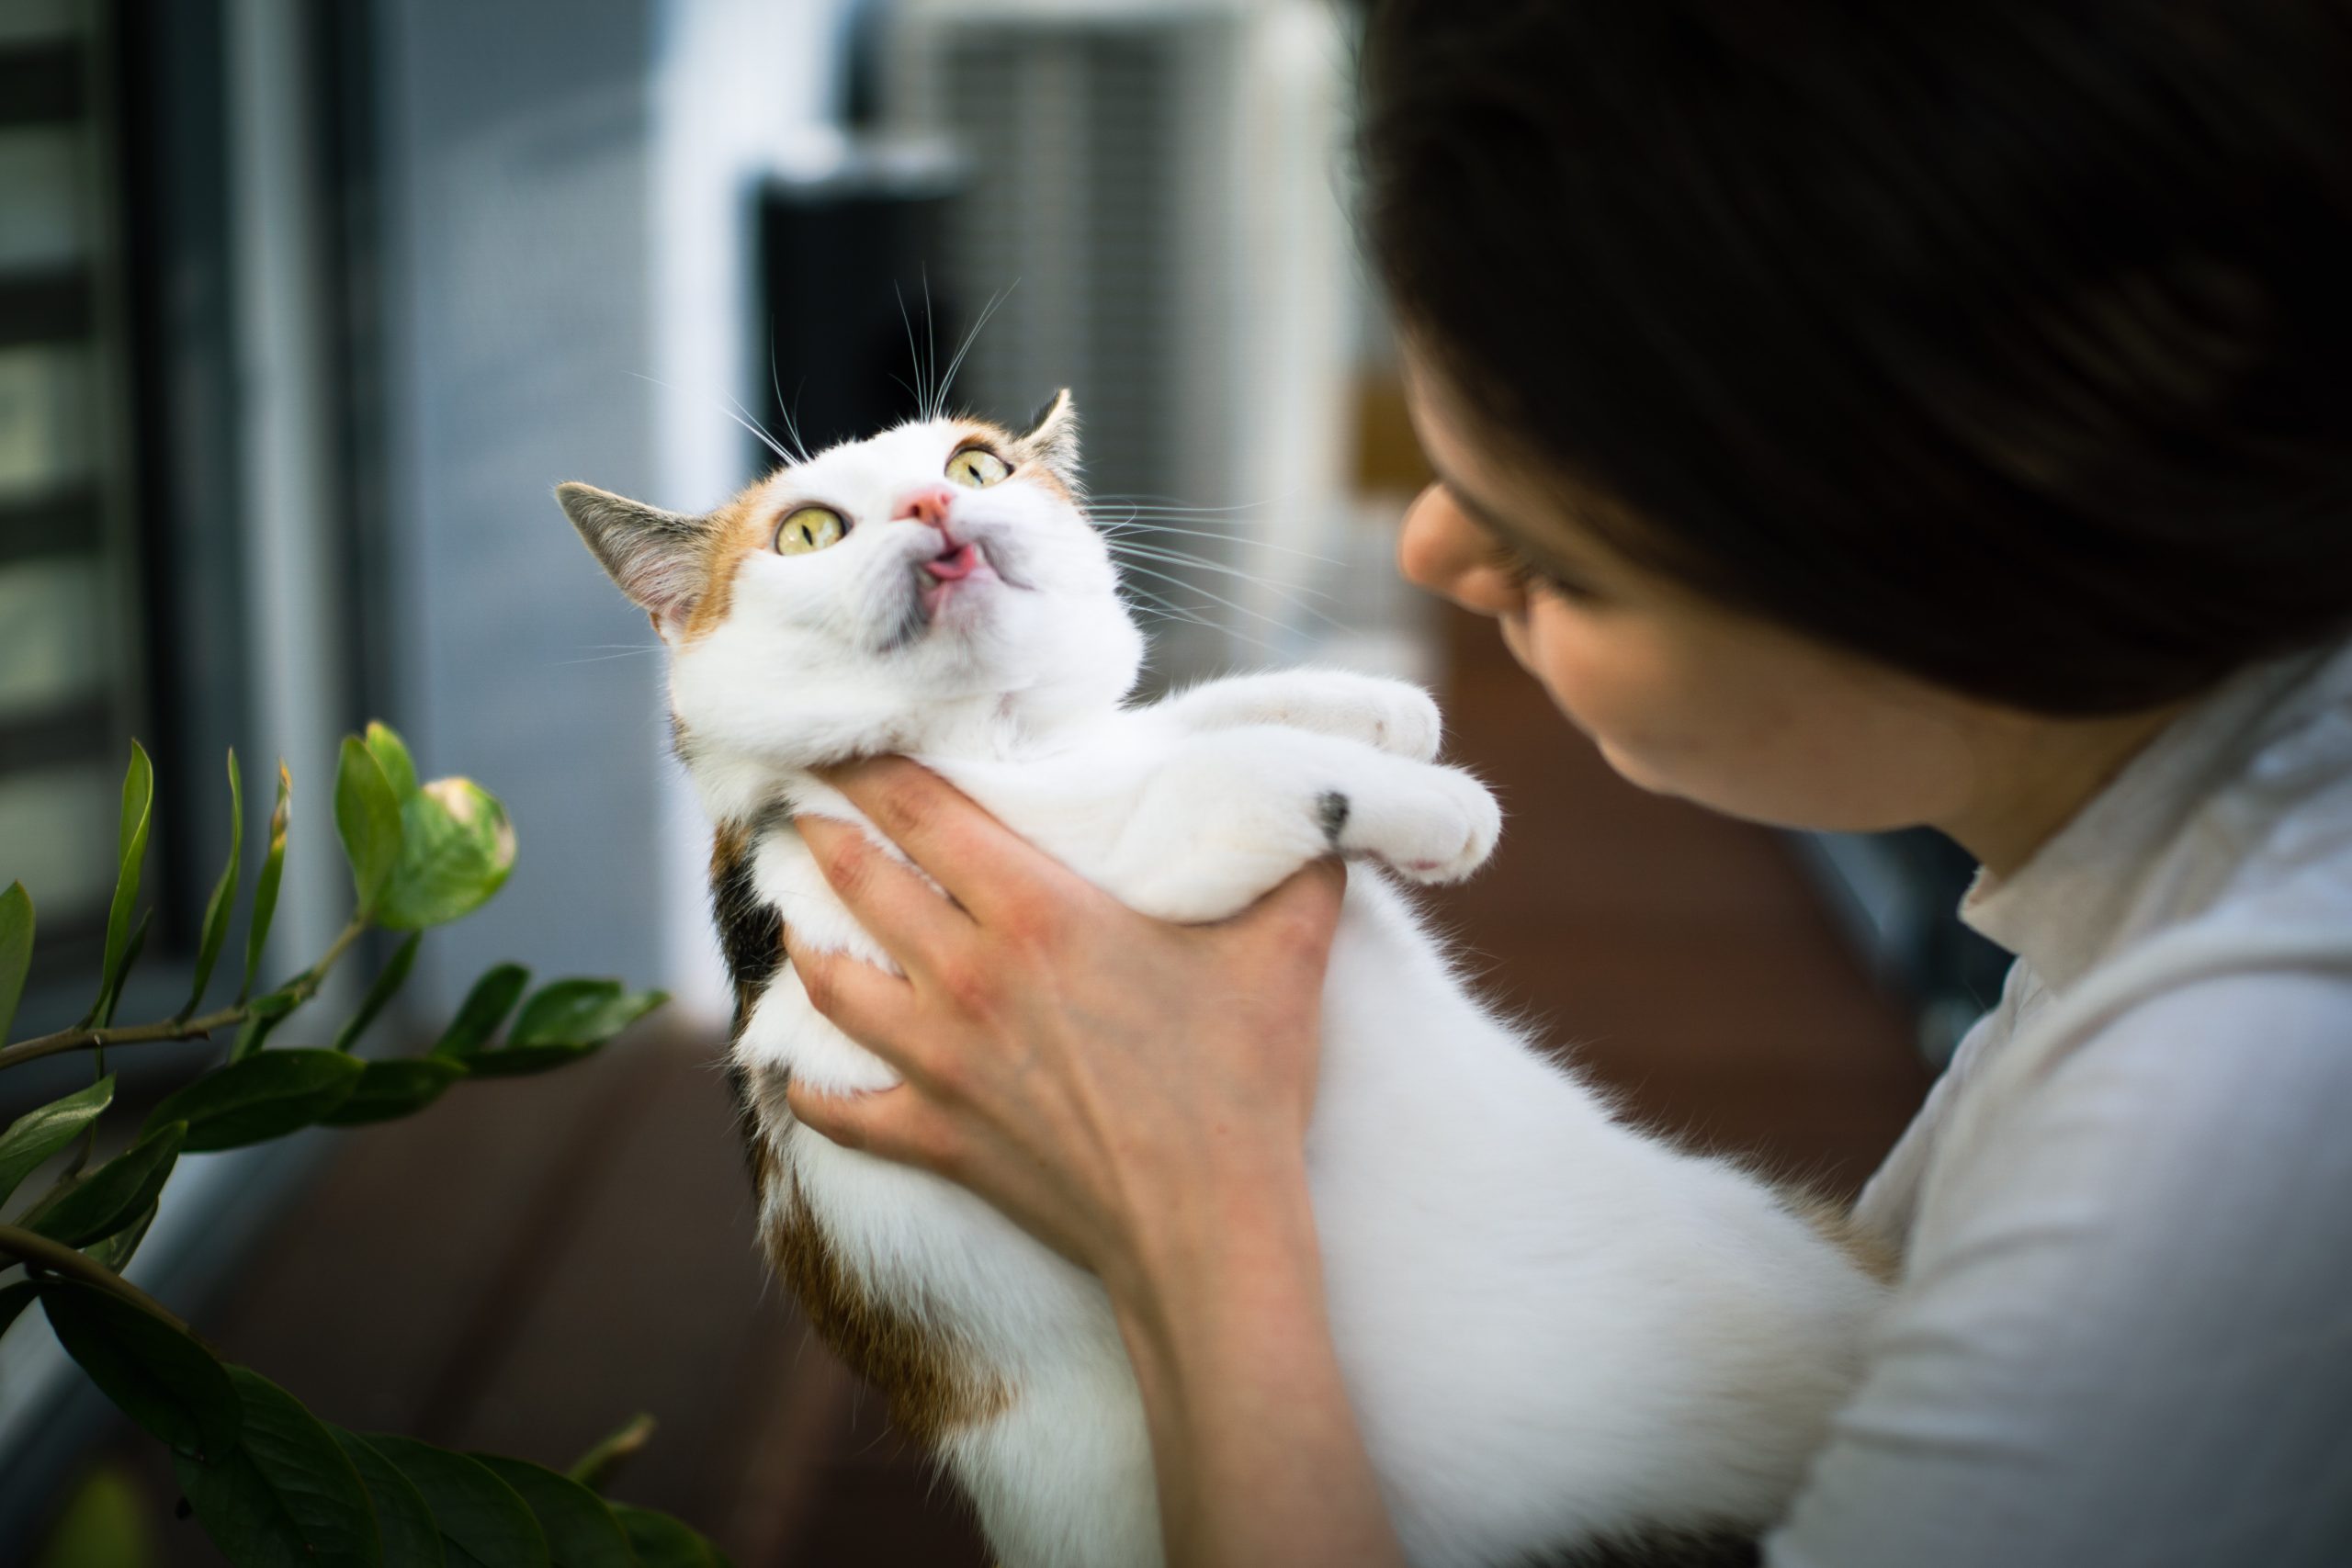 Verbreitete Katzenkrankheiten,katzenversicherung,katzenkranheiten,katze schnupfen, Verbreitete Katzenkrankheiten: Überblick und warum eine Katzenversicherung sinnvoll ist